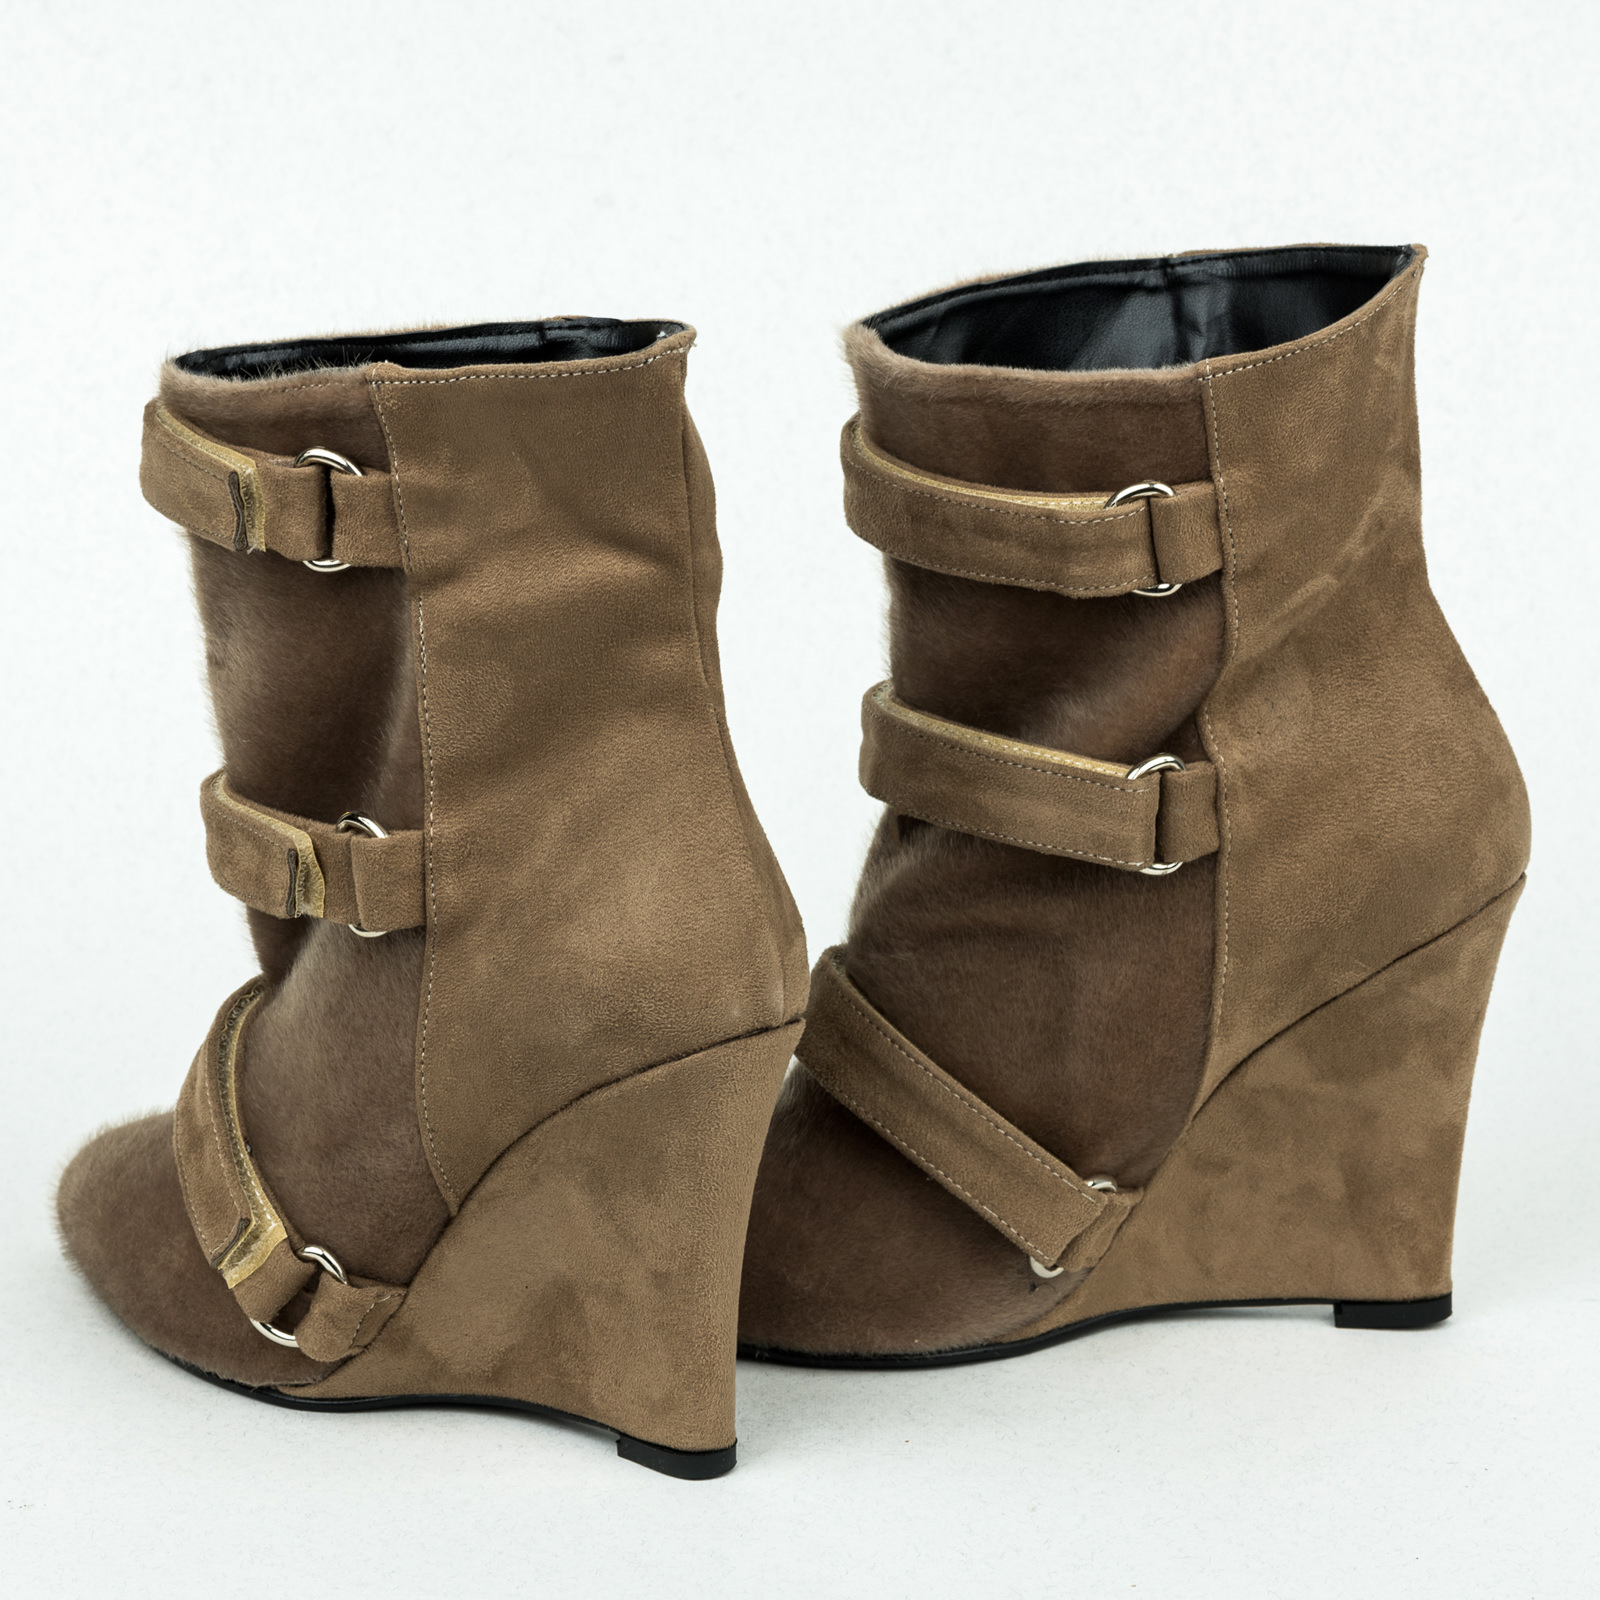 Women ankle boots B166 - BEIGE